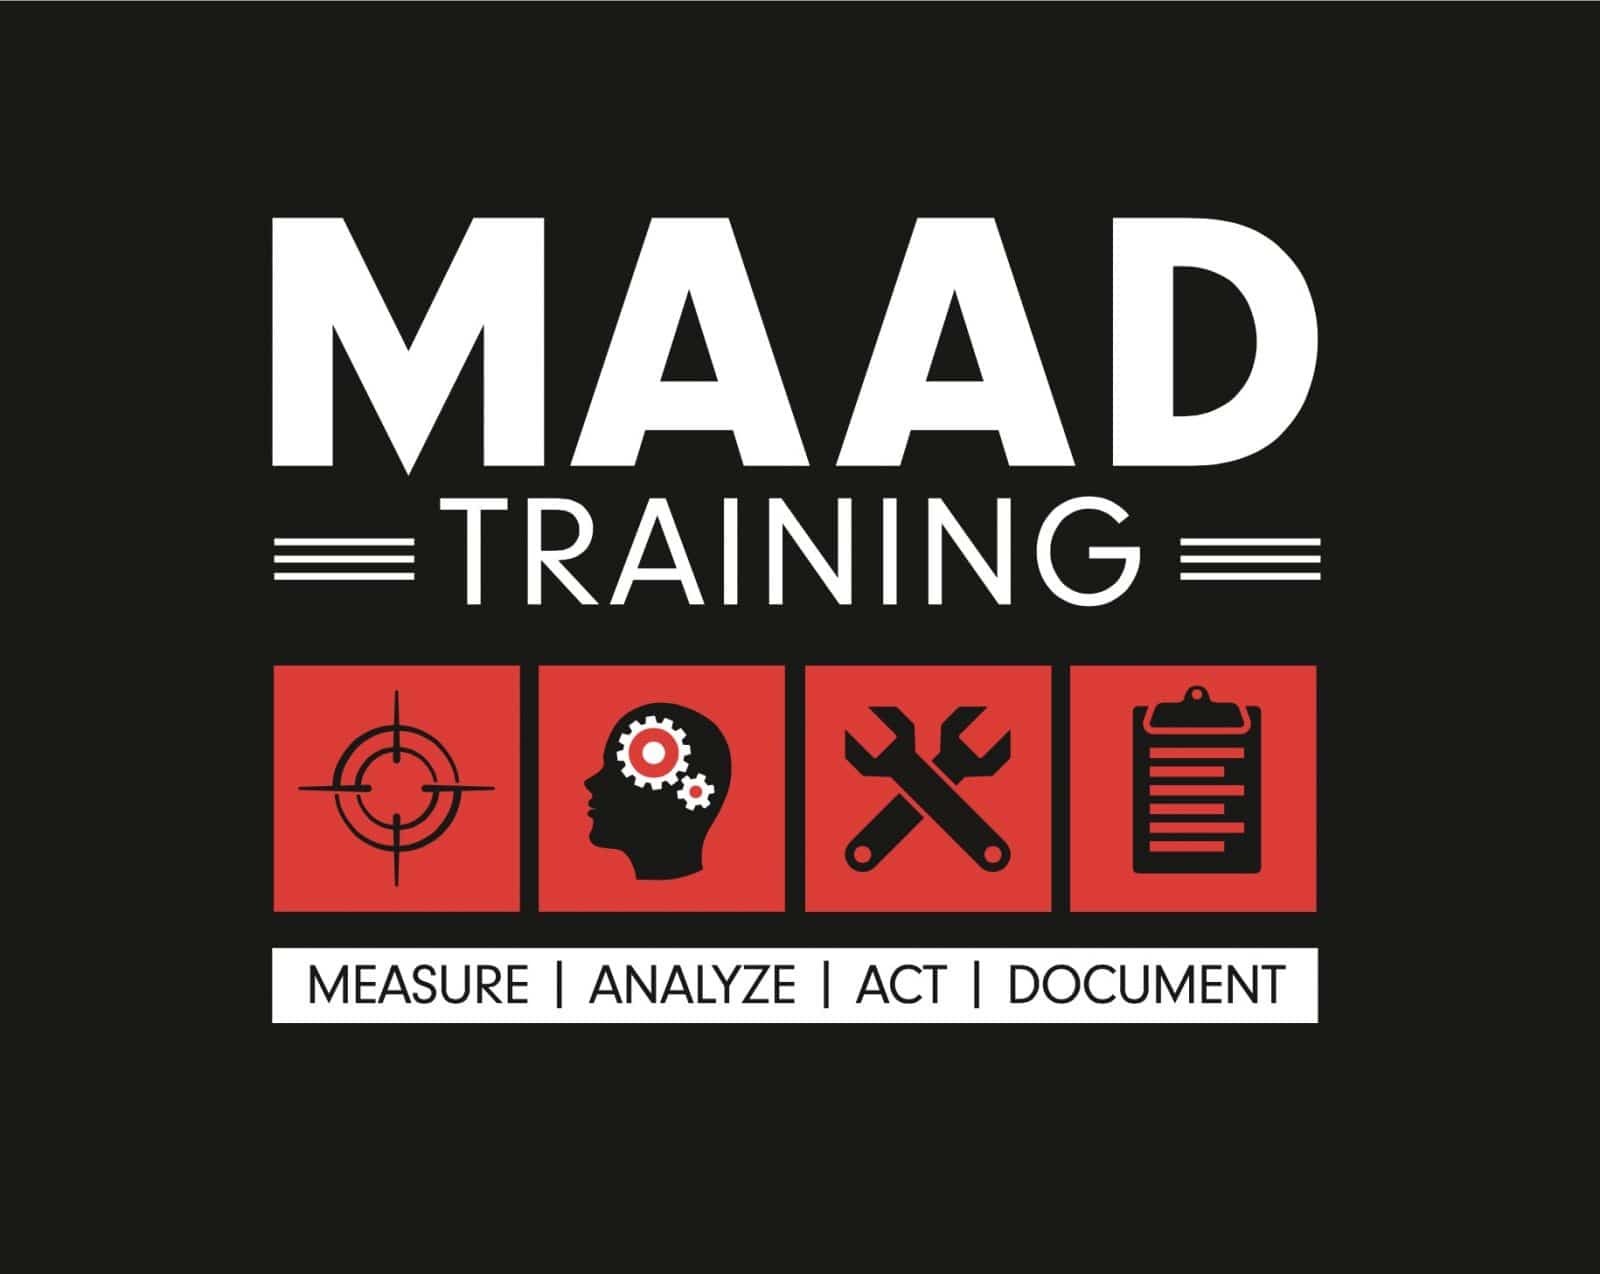 MAAD training